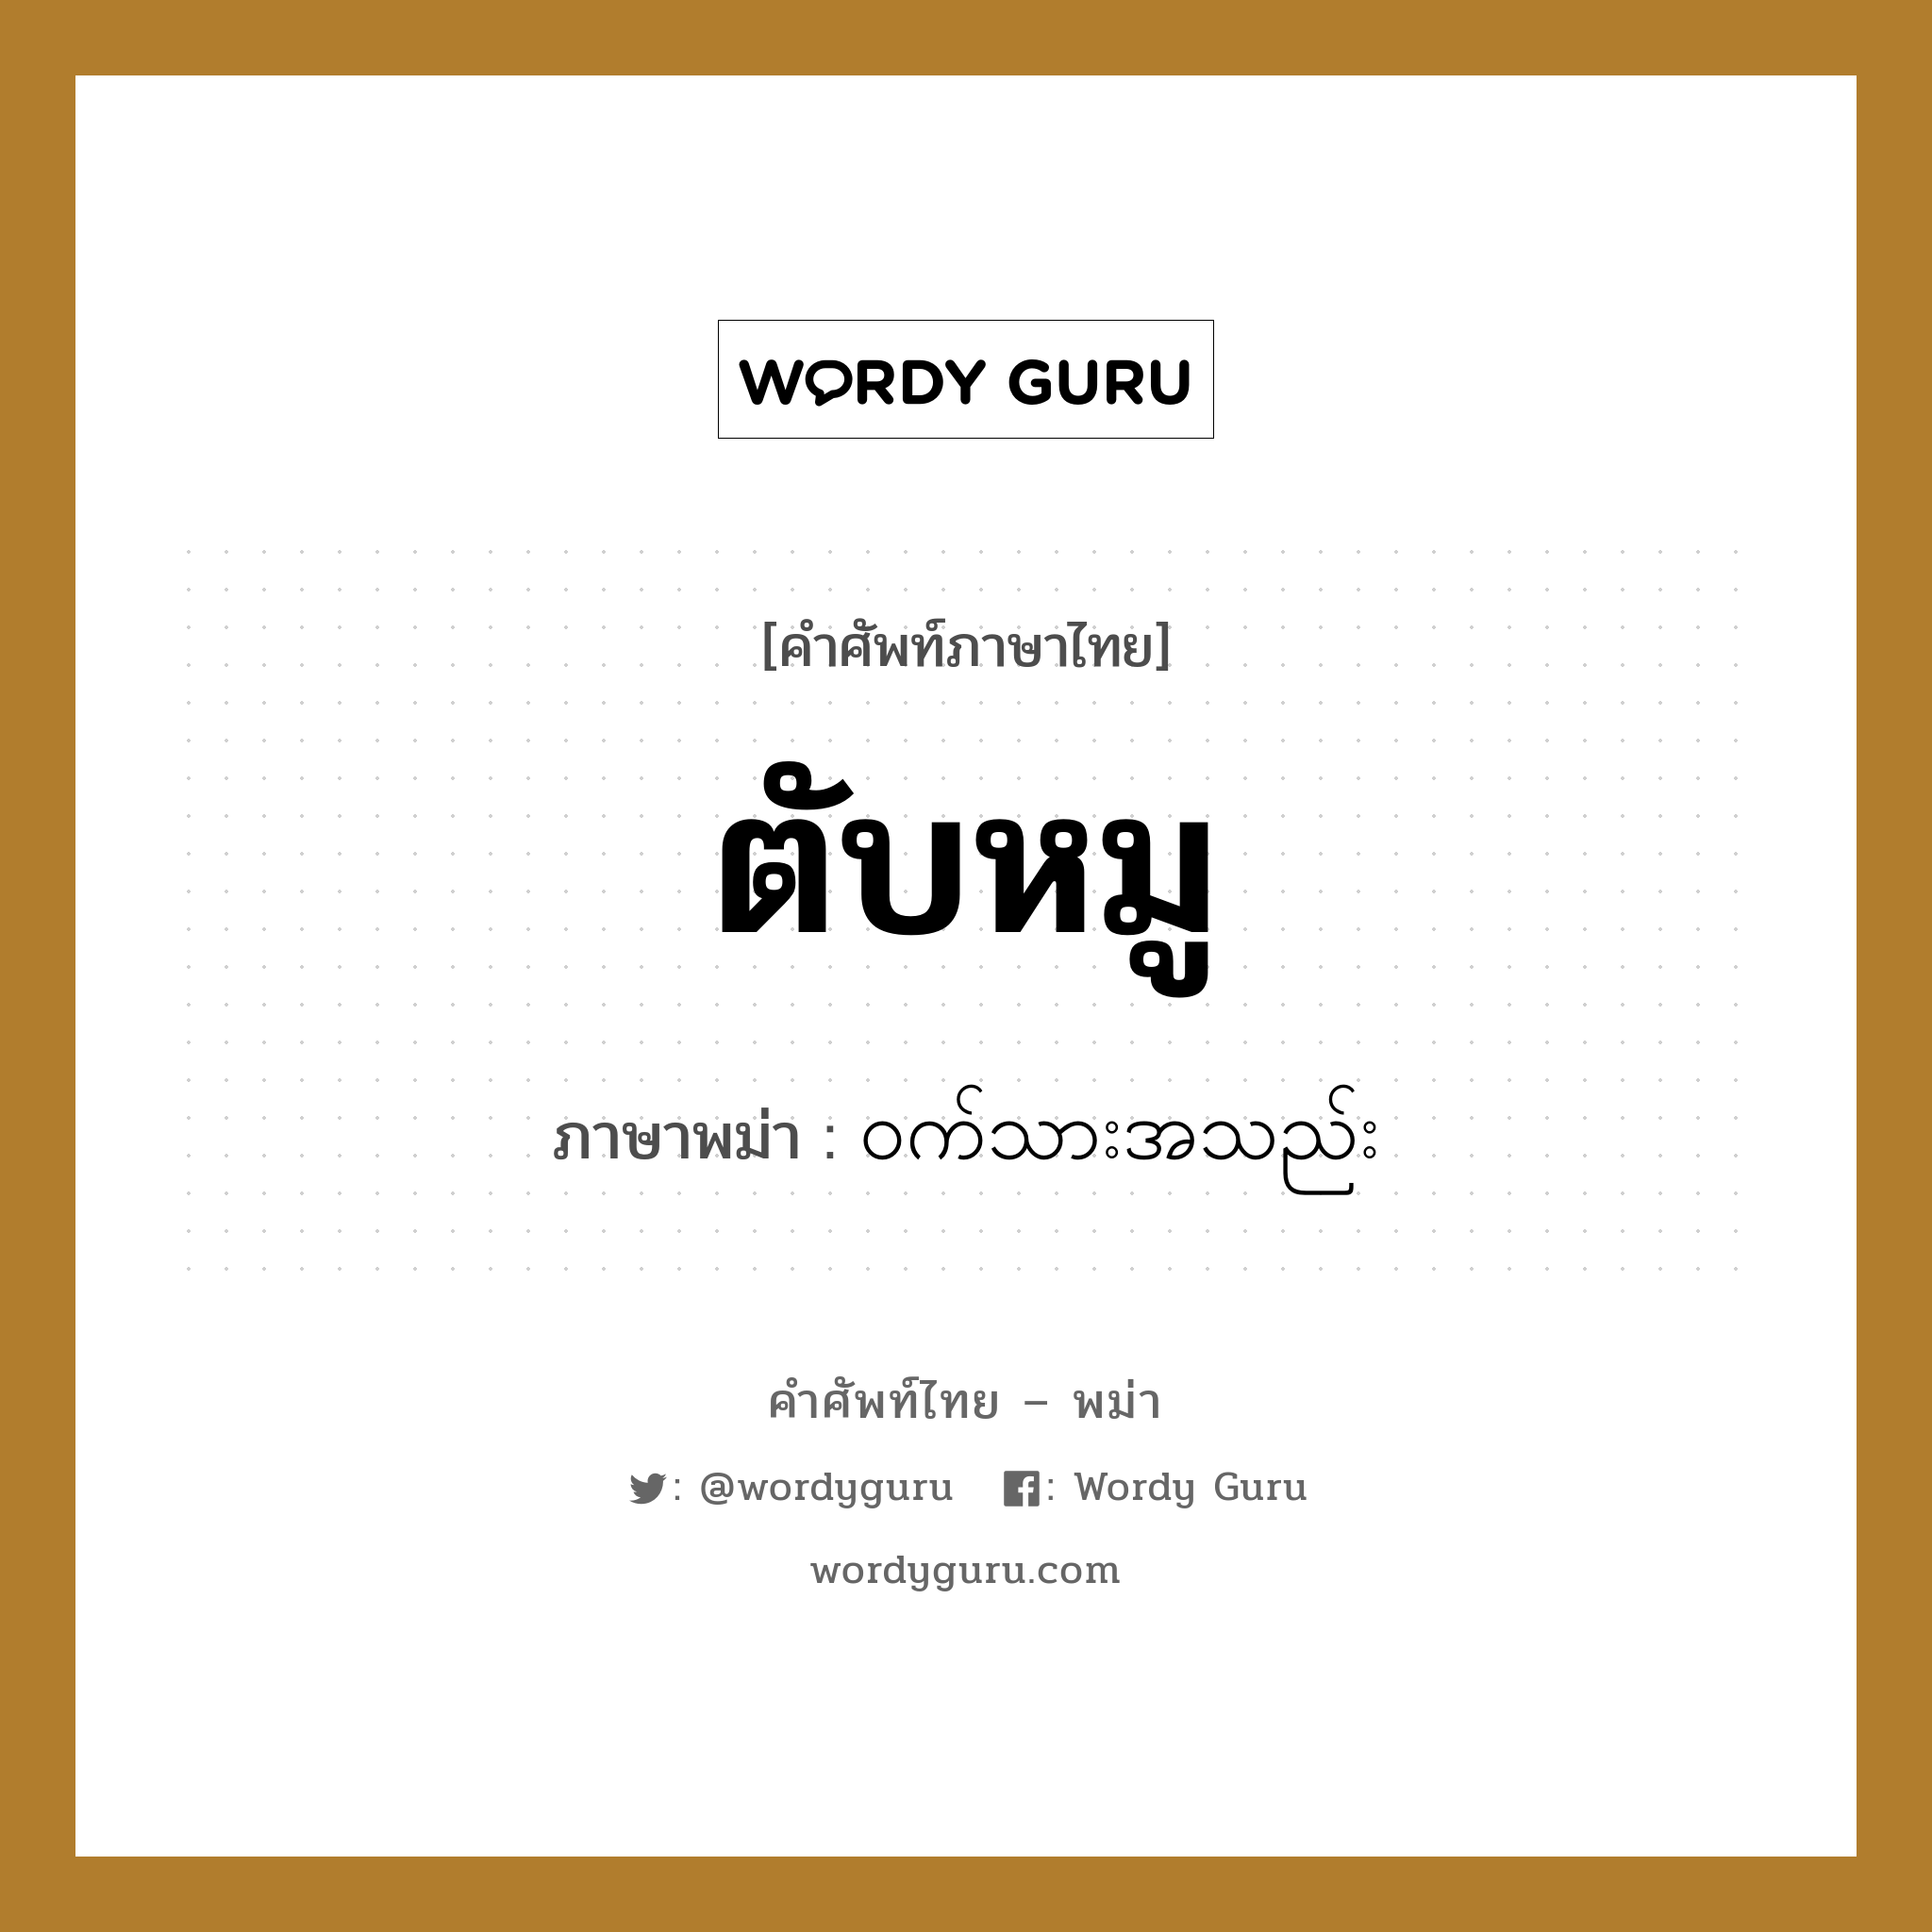 ตับหมู ภาษาพม่าคืออะไร, คำศัพท์ภาษาไทย - พม่า ตับหมู ภาษาพม่า ဝက်သားအသည်း